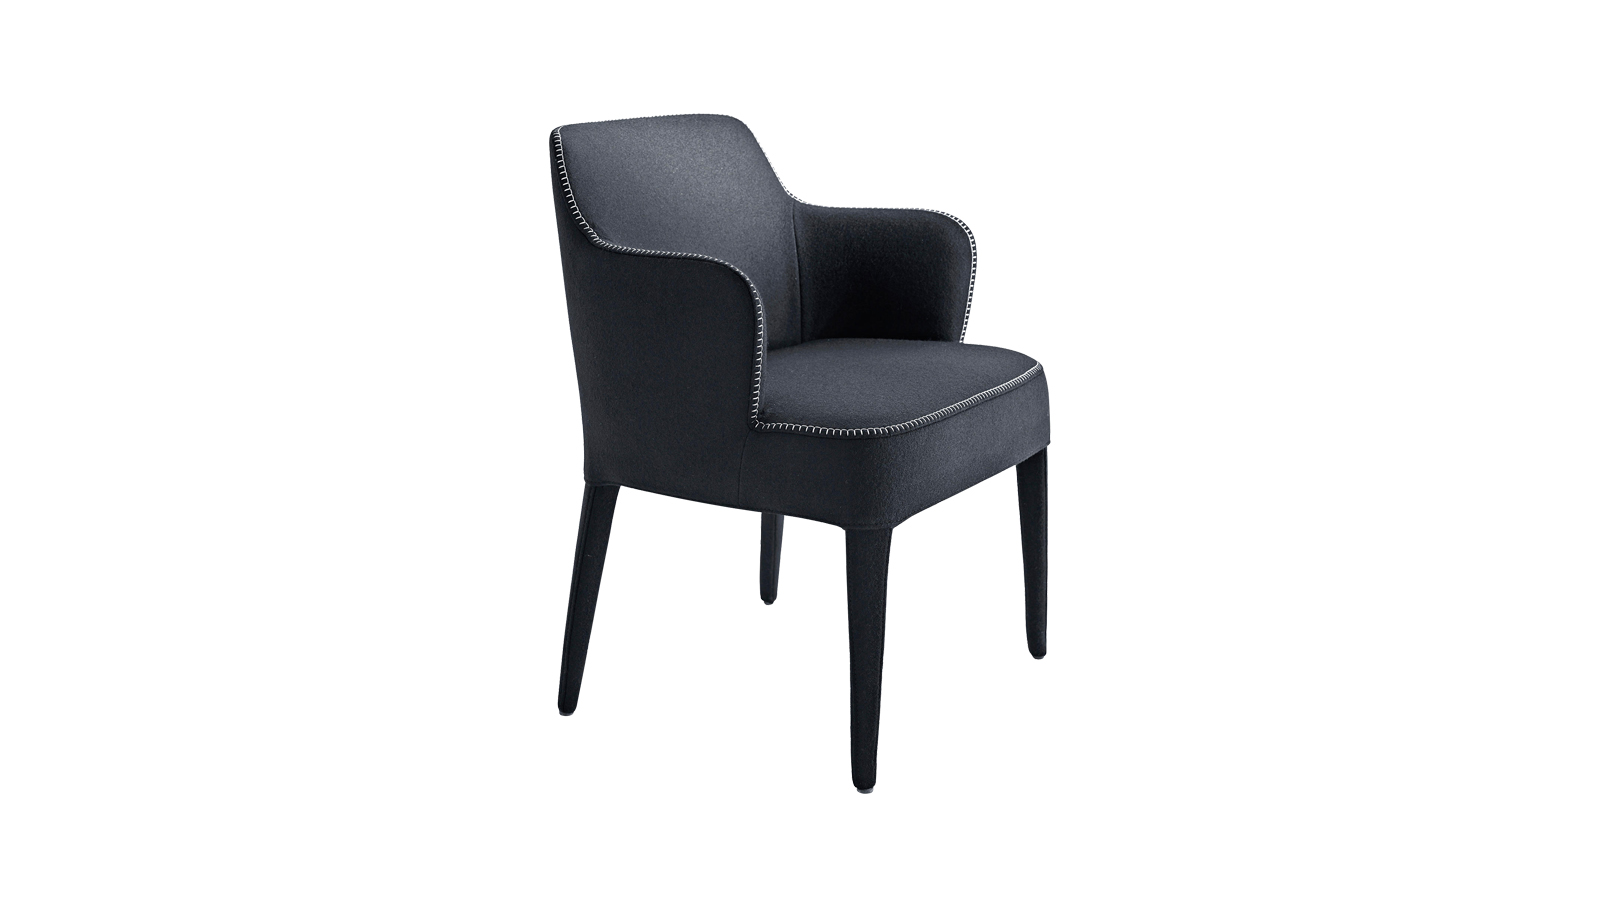 A Febo bútorcsaládba székek, puffok és kanapék széles választéka tartozik. Székei, csakúgy, mint a kollekció további képviselői, a klasszikus esztétikát idézik minimalista, modern csavarral. Barokkos elegancia, letisztult stílus és maximális minőség jellemzi őket.